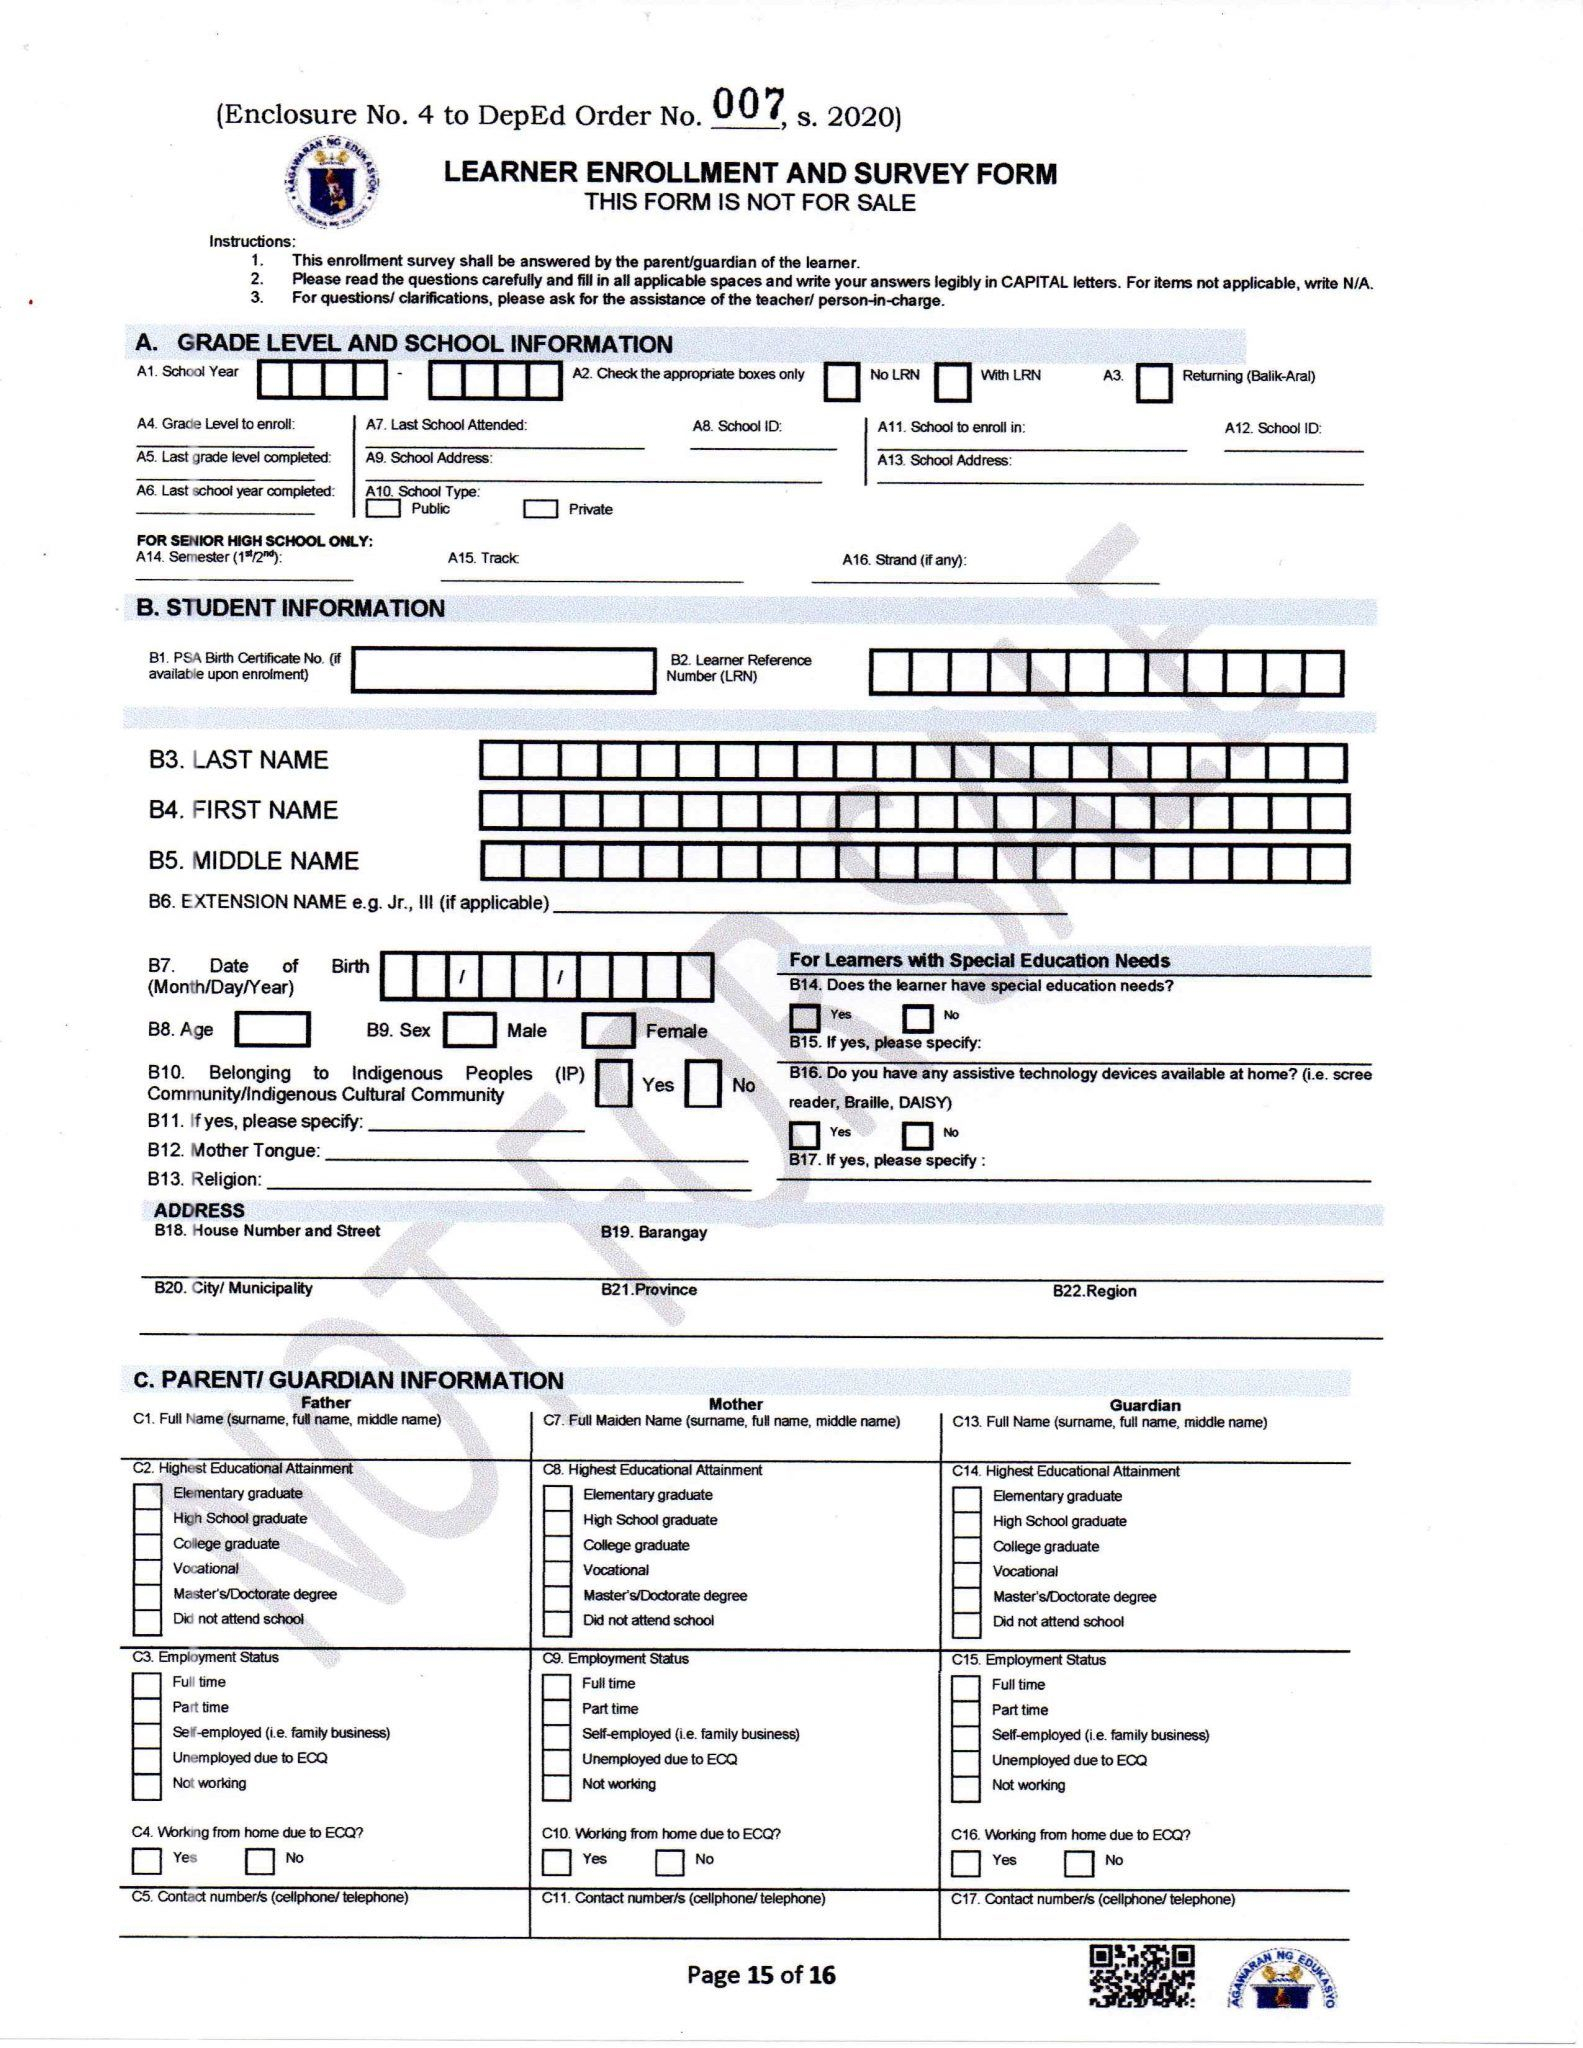 Enrollment Form Sample Deped Enrollment Form